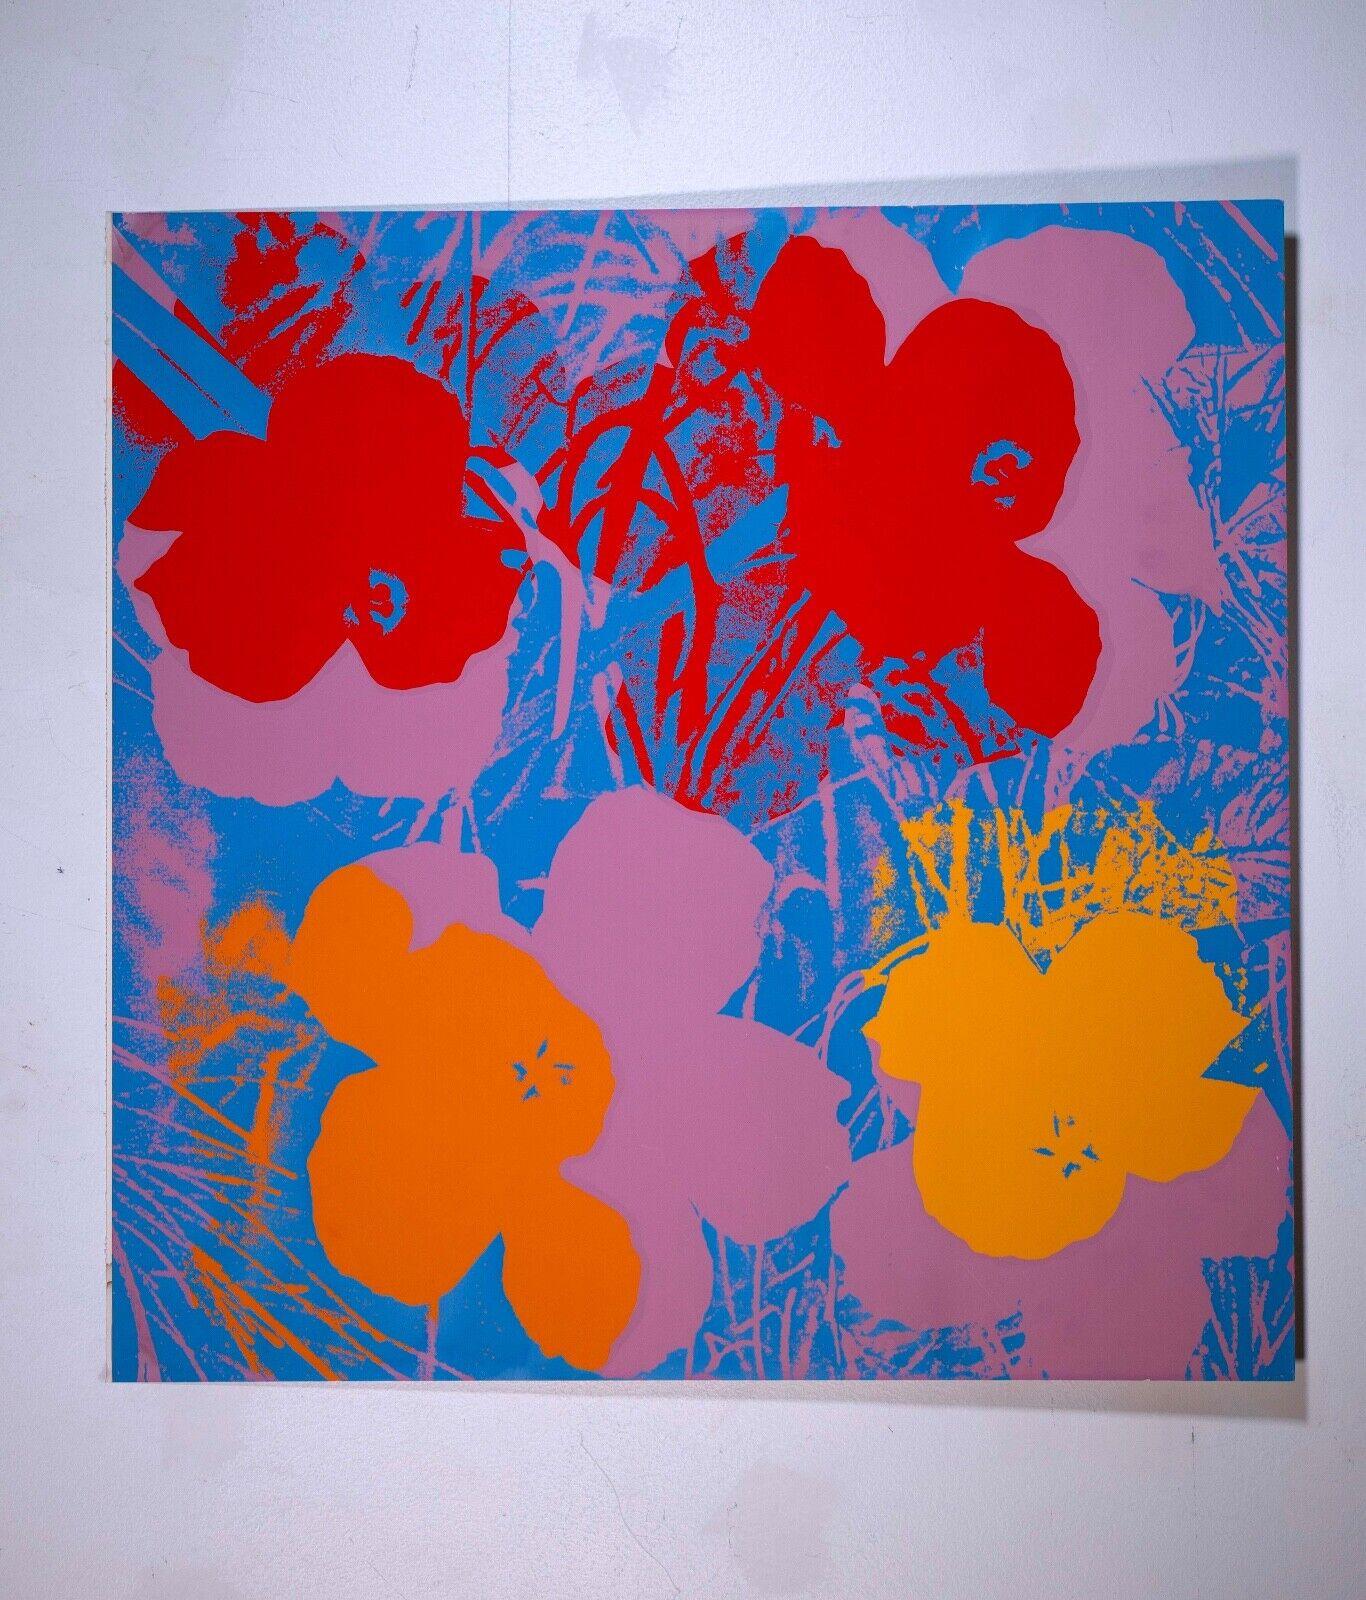 Fin du 20e siècle Andy Warhol Flowers (F. & S. II.66), sérigraphie Pop Art en couleurs, UF 1970